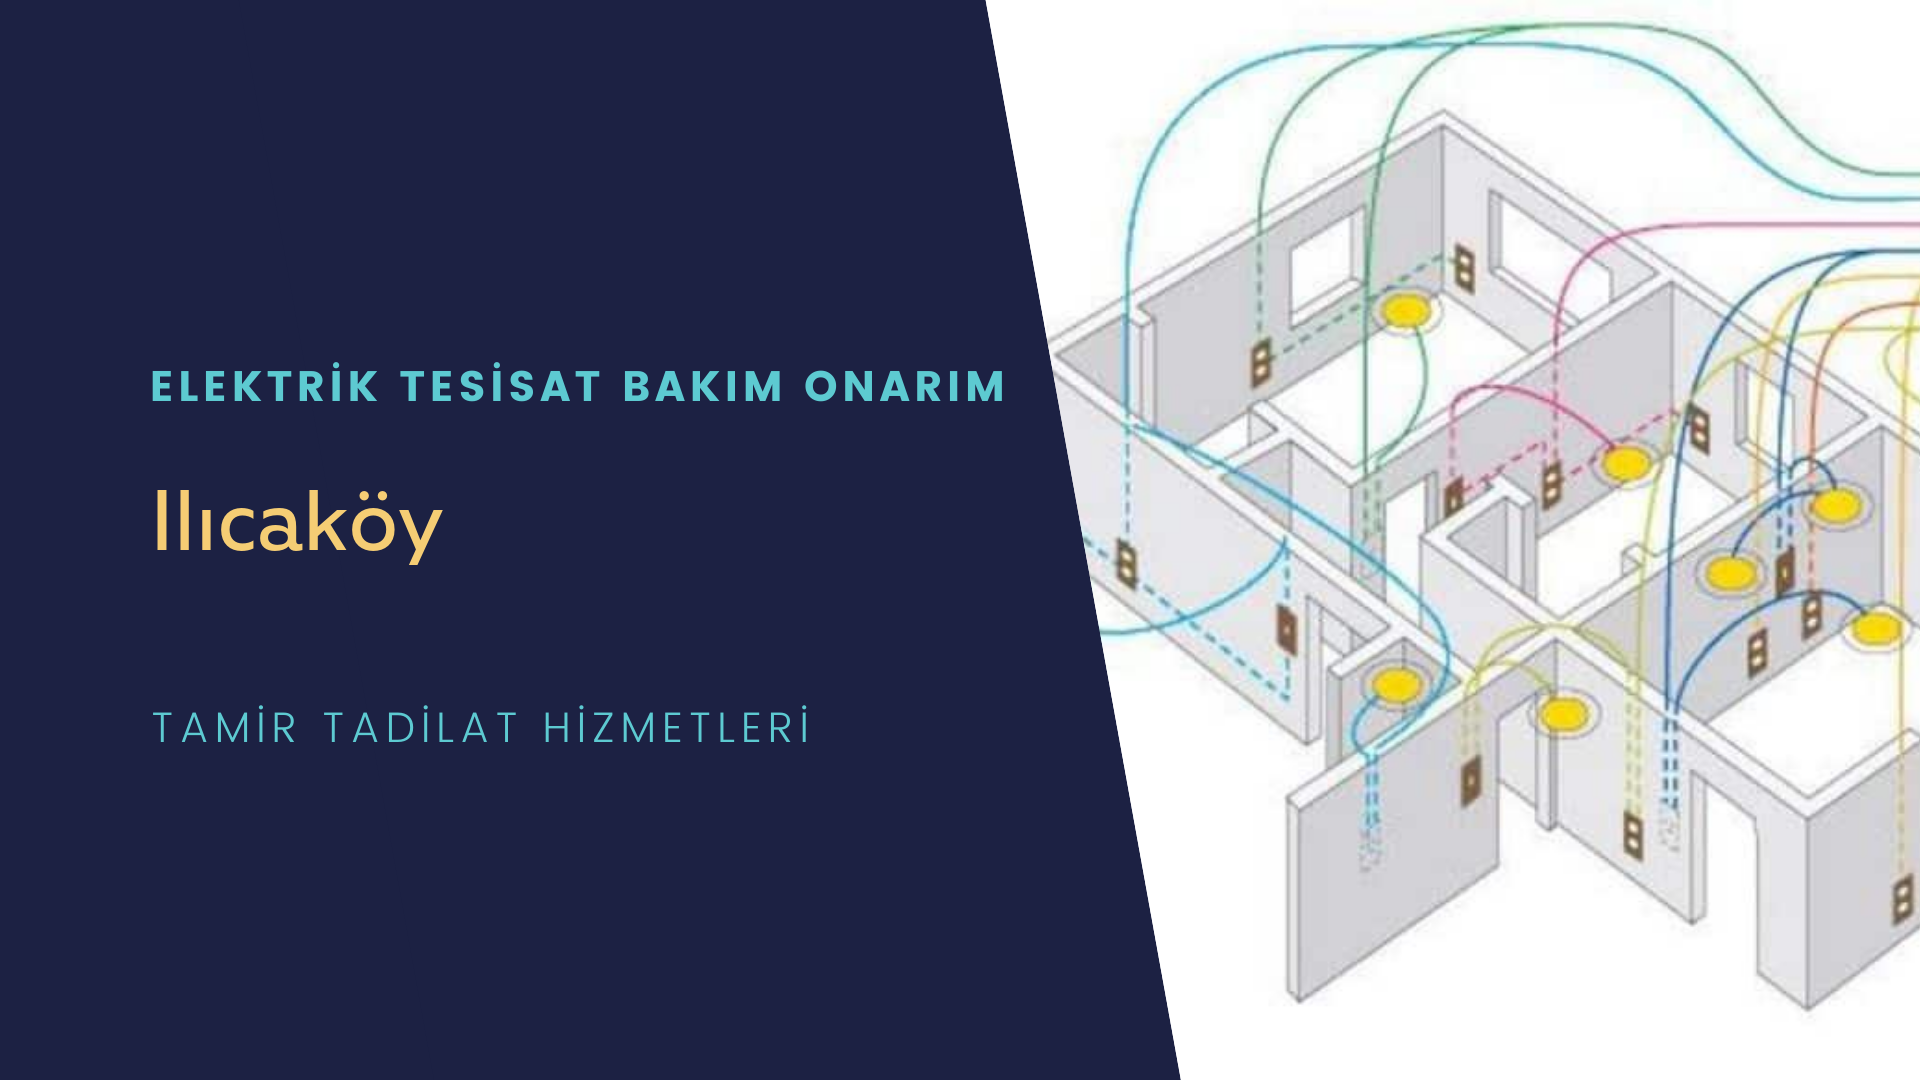 Ilıcaköy'de elektrik tesisatı ustalarımı arıyorsunuz doğru adrestenizi Ilıcaköy elektrik tesisatı ustalarımız 7/24 sizlere hizmet vermekten mutluluk duyar.